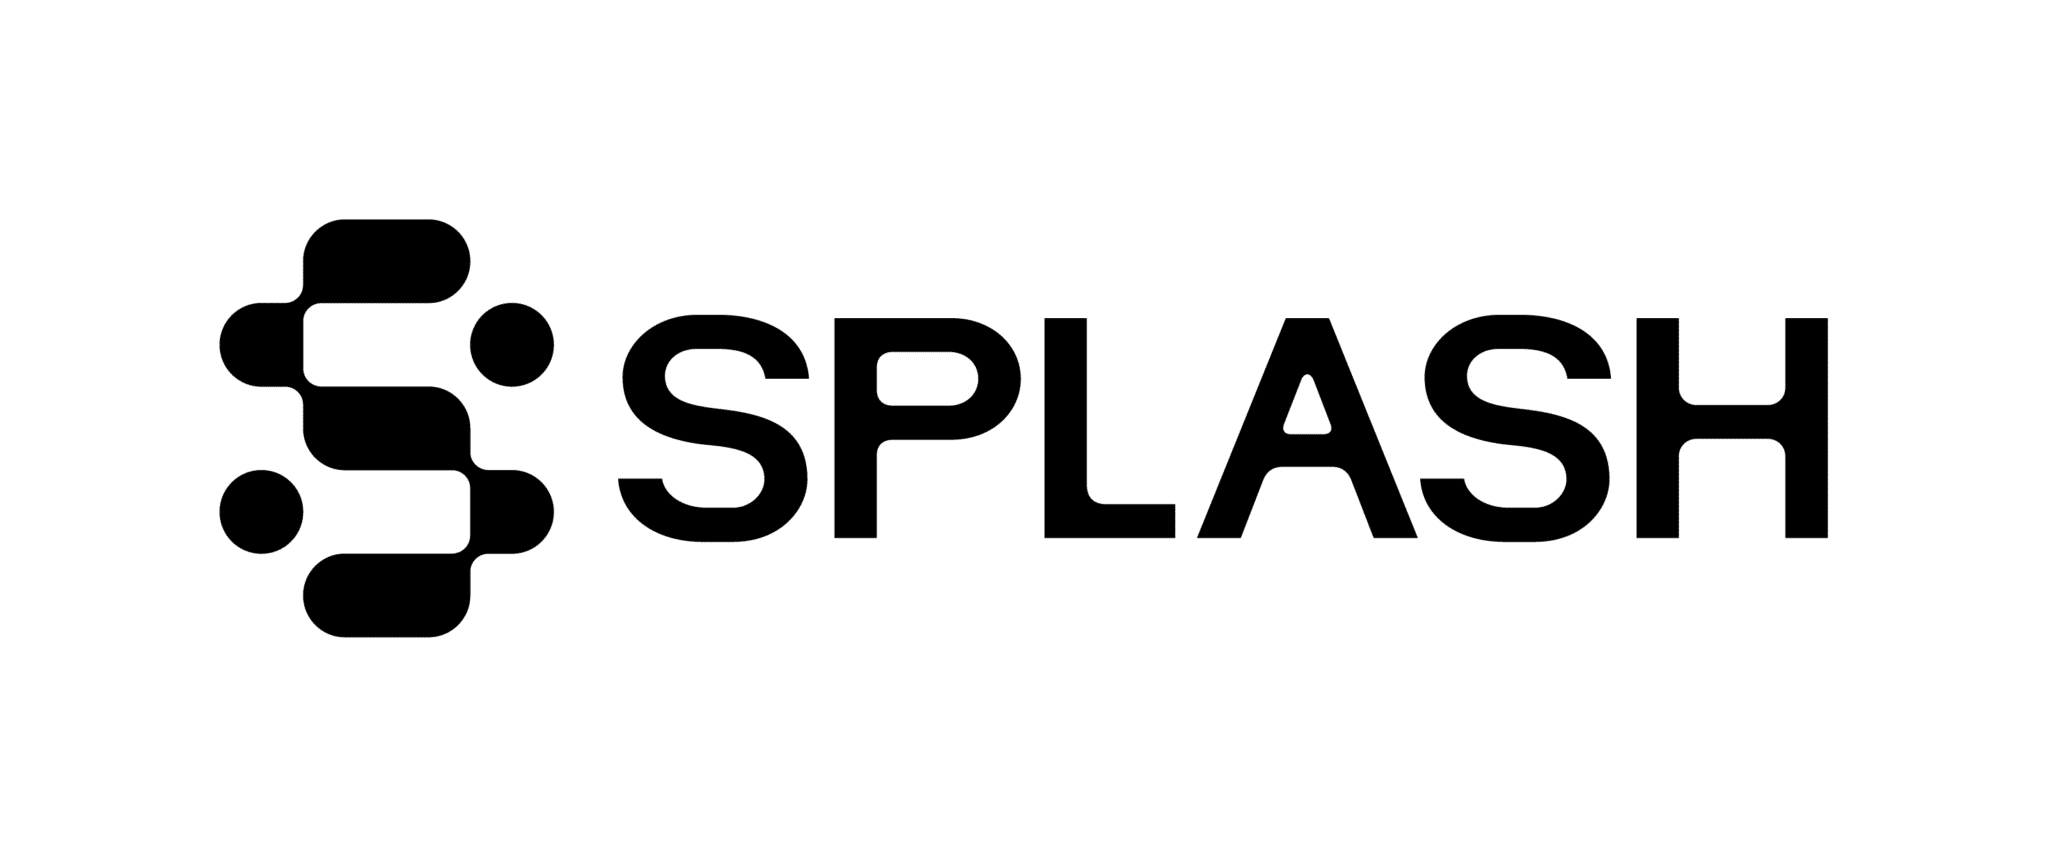 Lend Grow Comparison: Splash